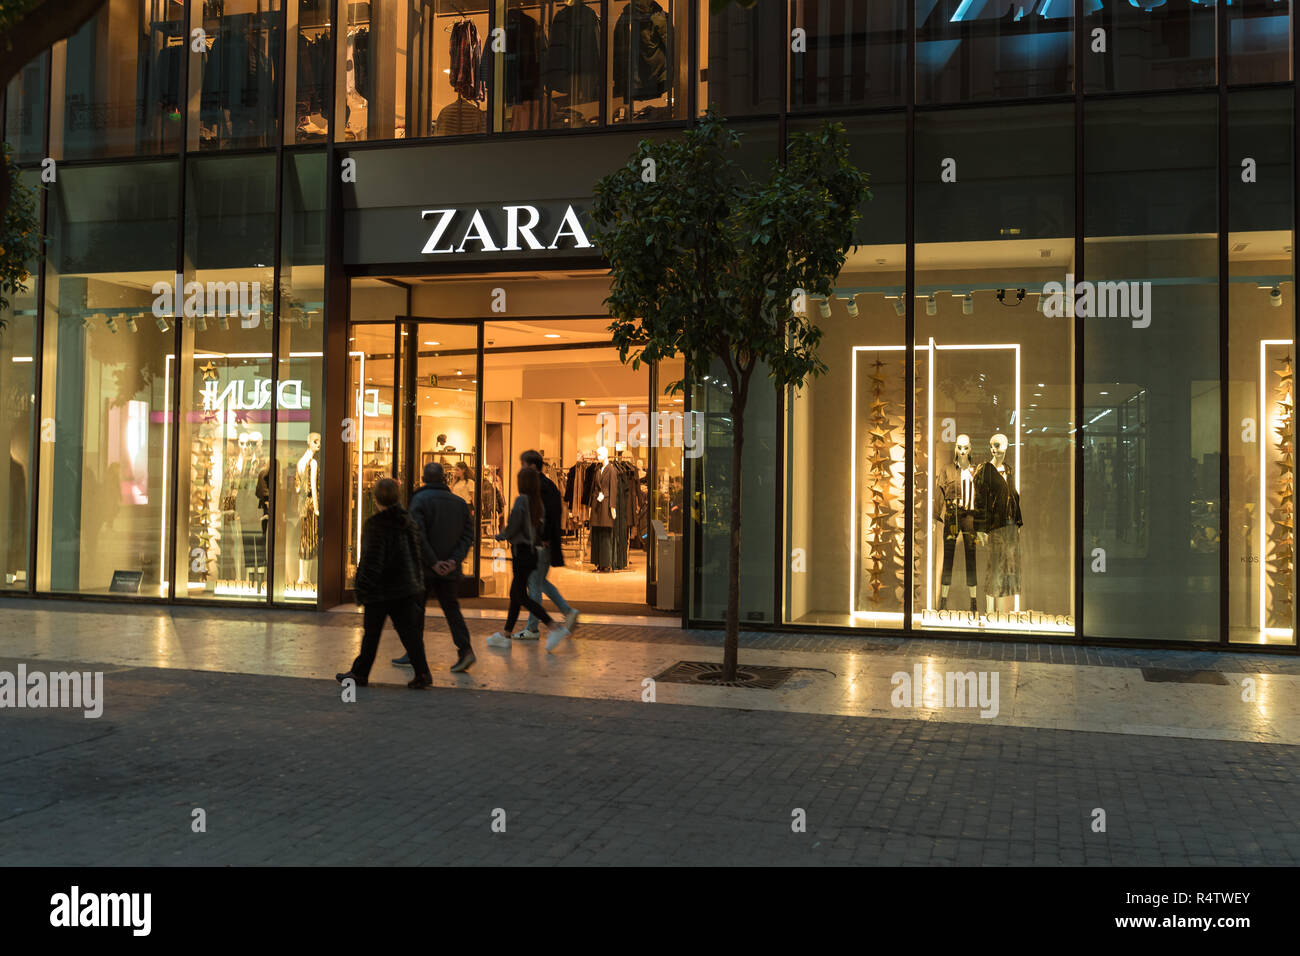 Zara Store Spain Banque d'image et photos - Page 2 - Alamy